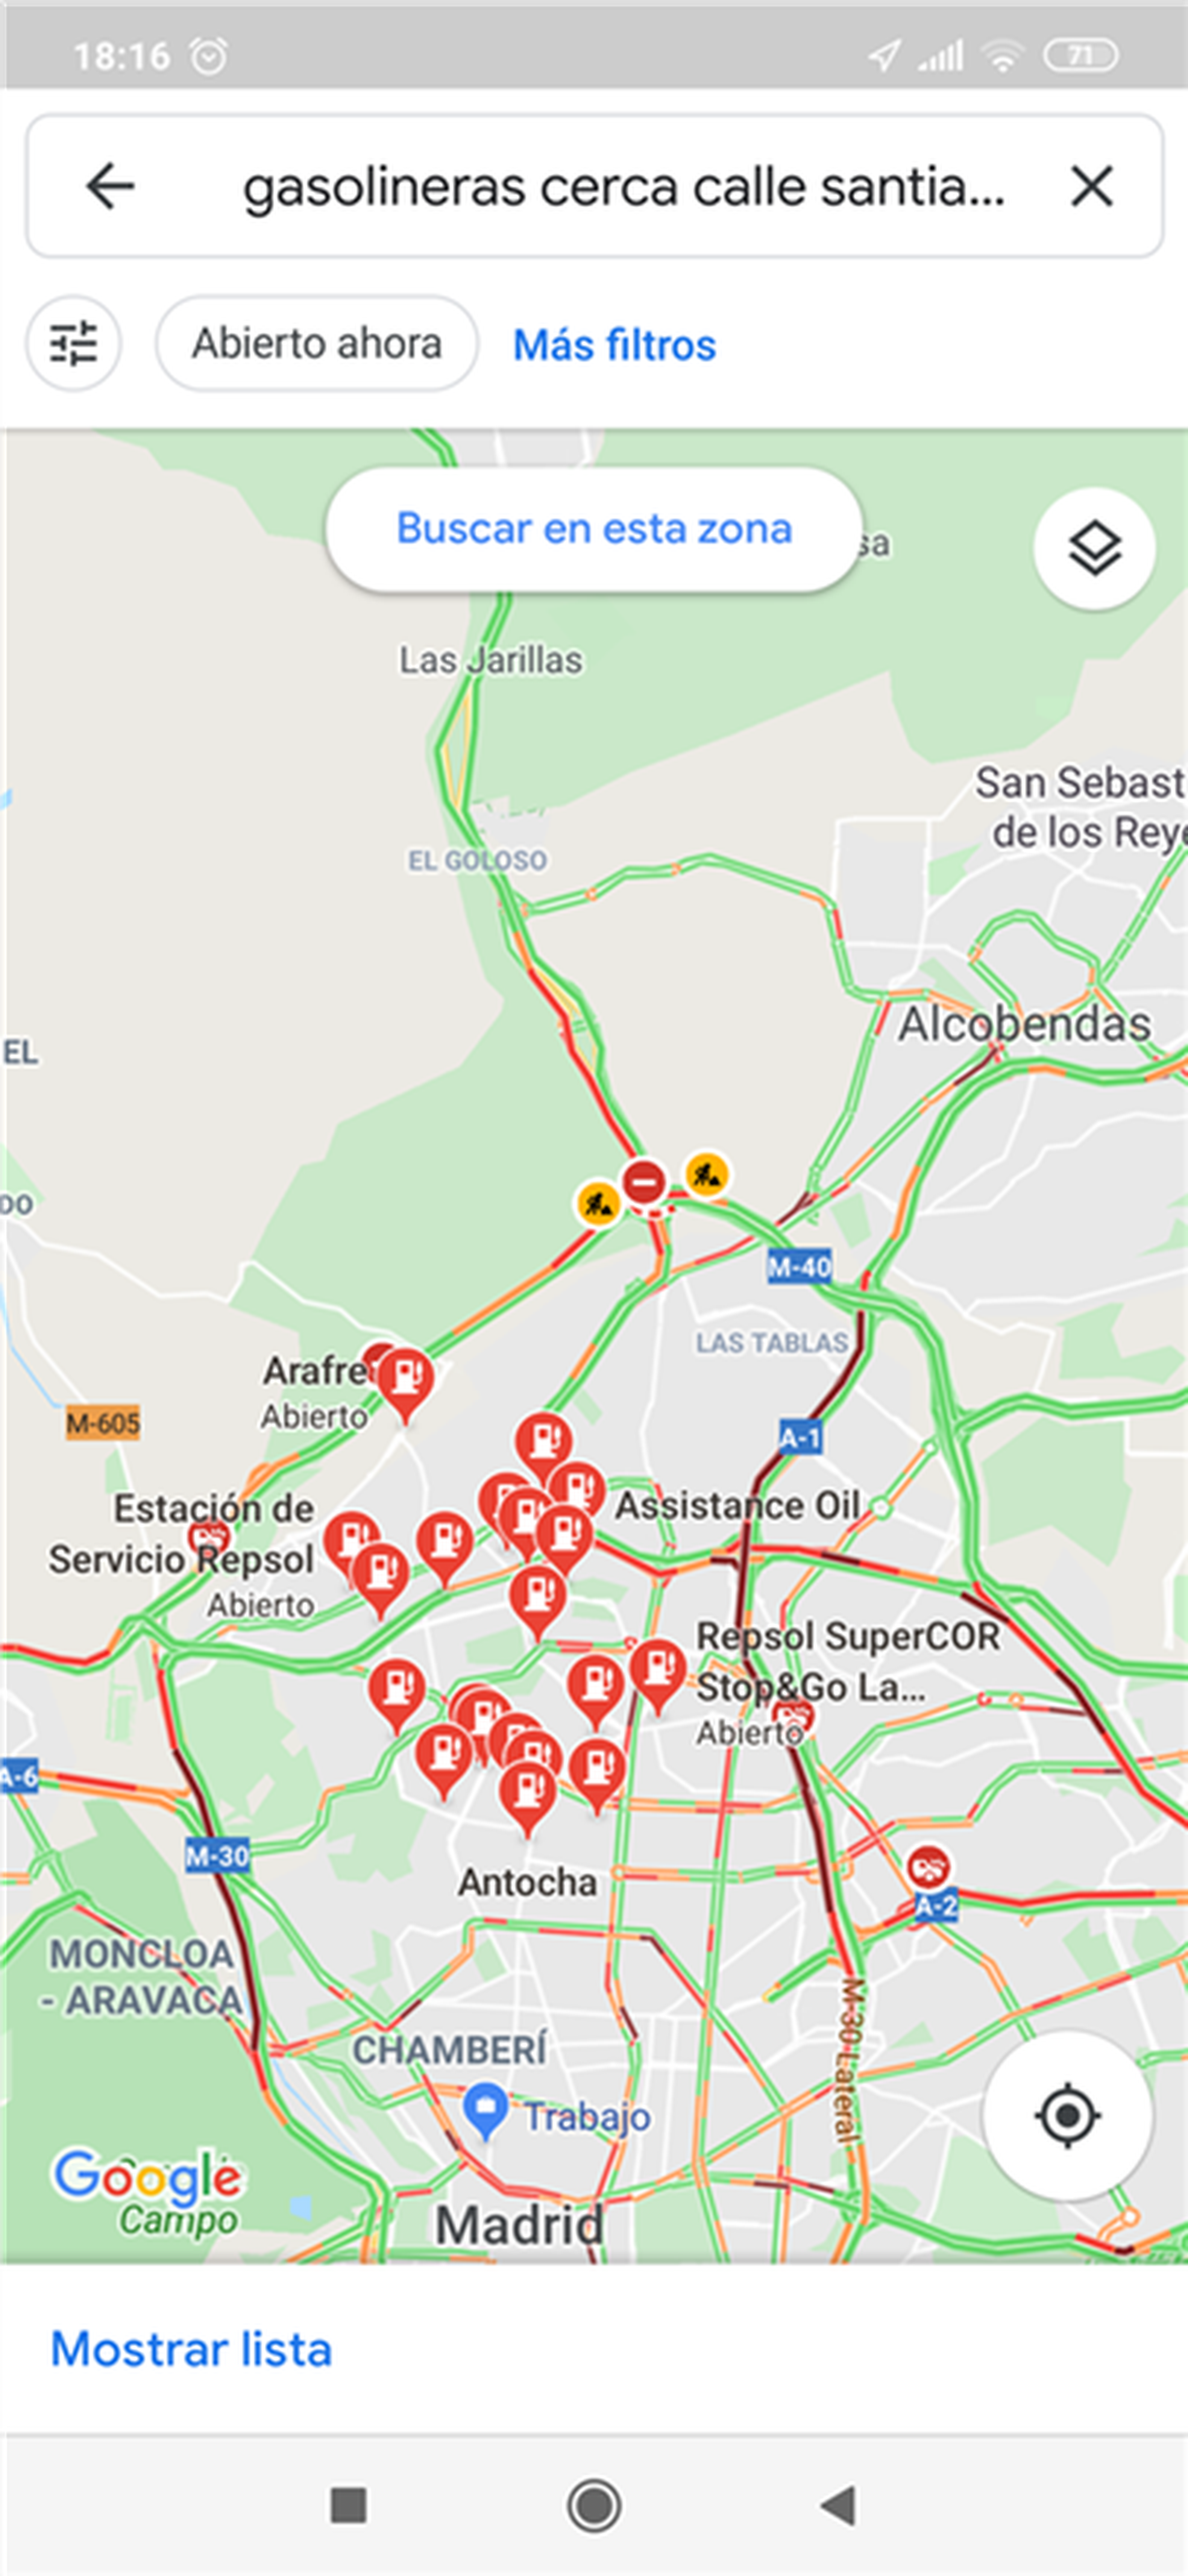 Google Maps te mostrará las gasolineras más cercanas a tu ubicación.